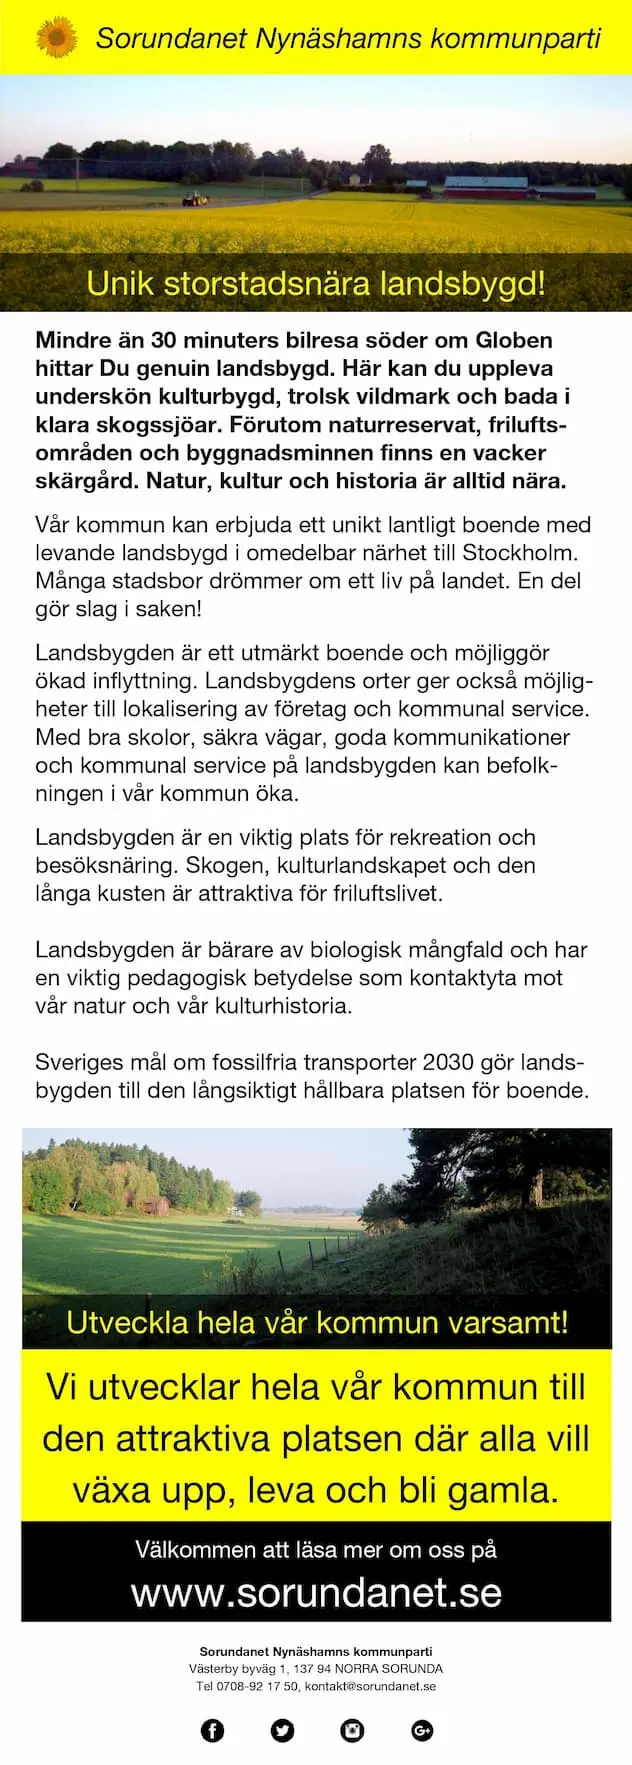 Vi frågar Dig om förslaget om ny stad i Segersäng! - Segersängsstaden - sida 4